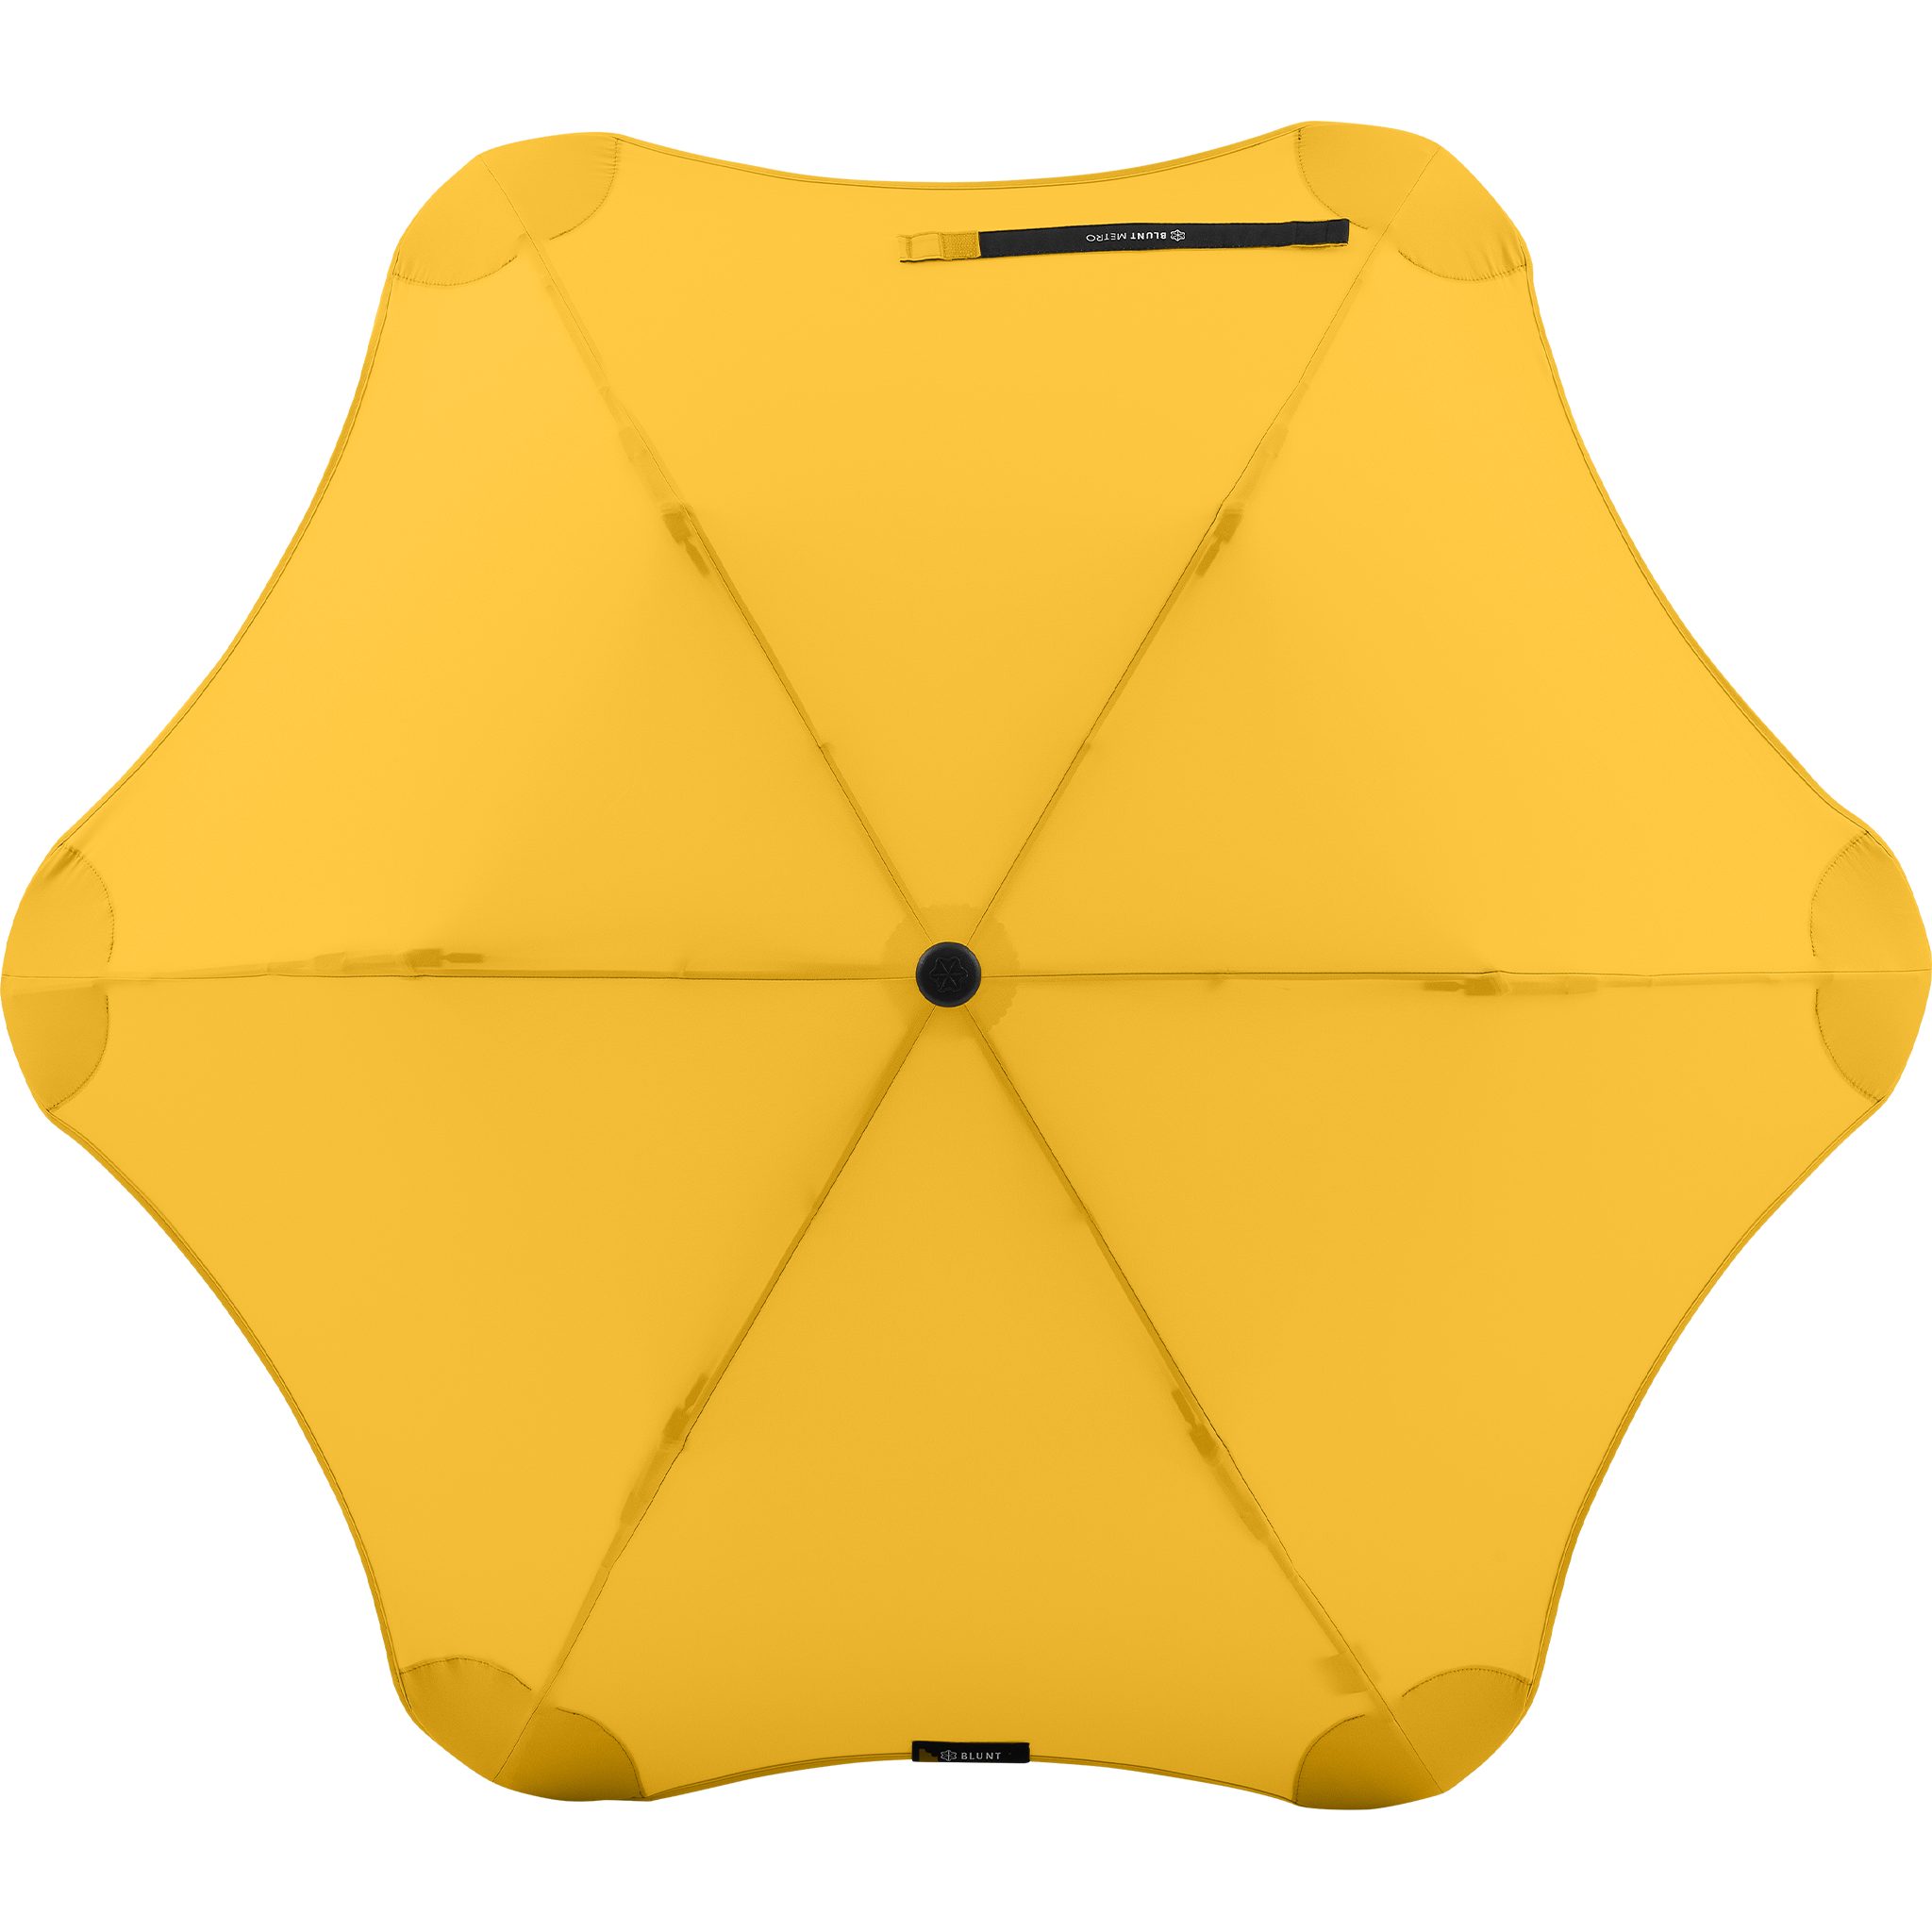 Blunt Taschenregenschirm Metro, patentierte herausragende Silhouette Technologie, gelb einzigartige